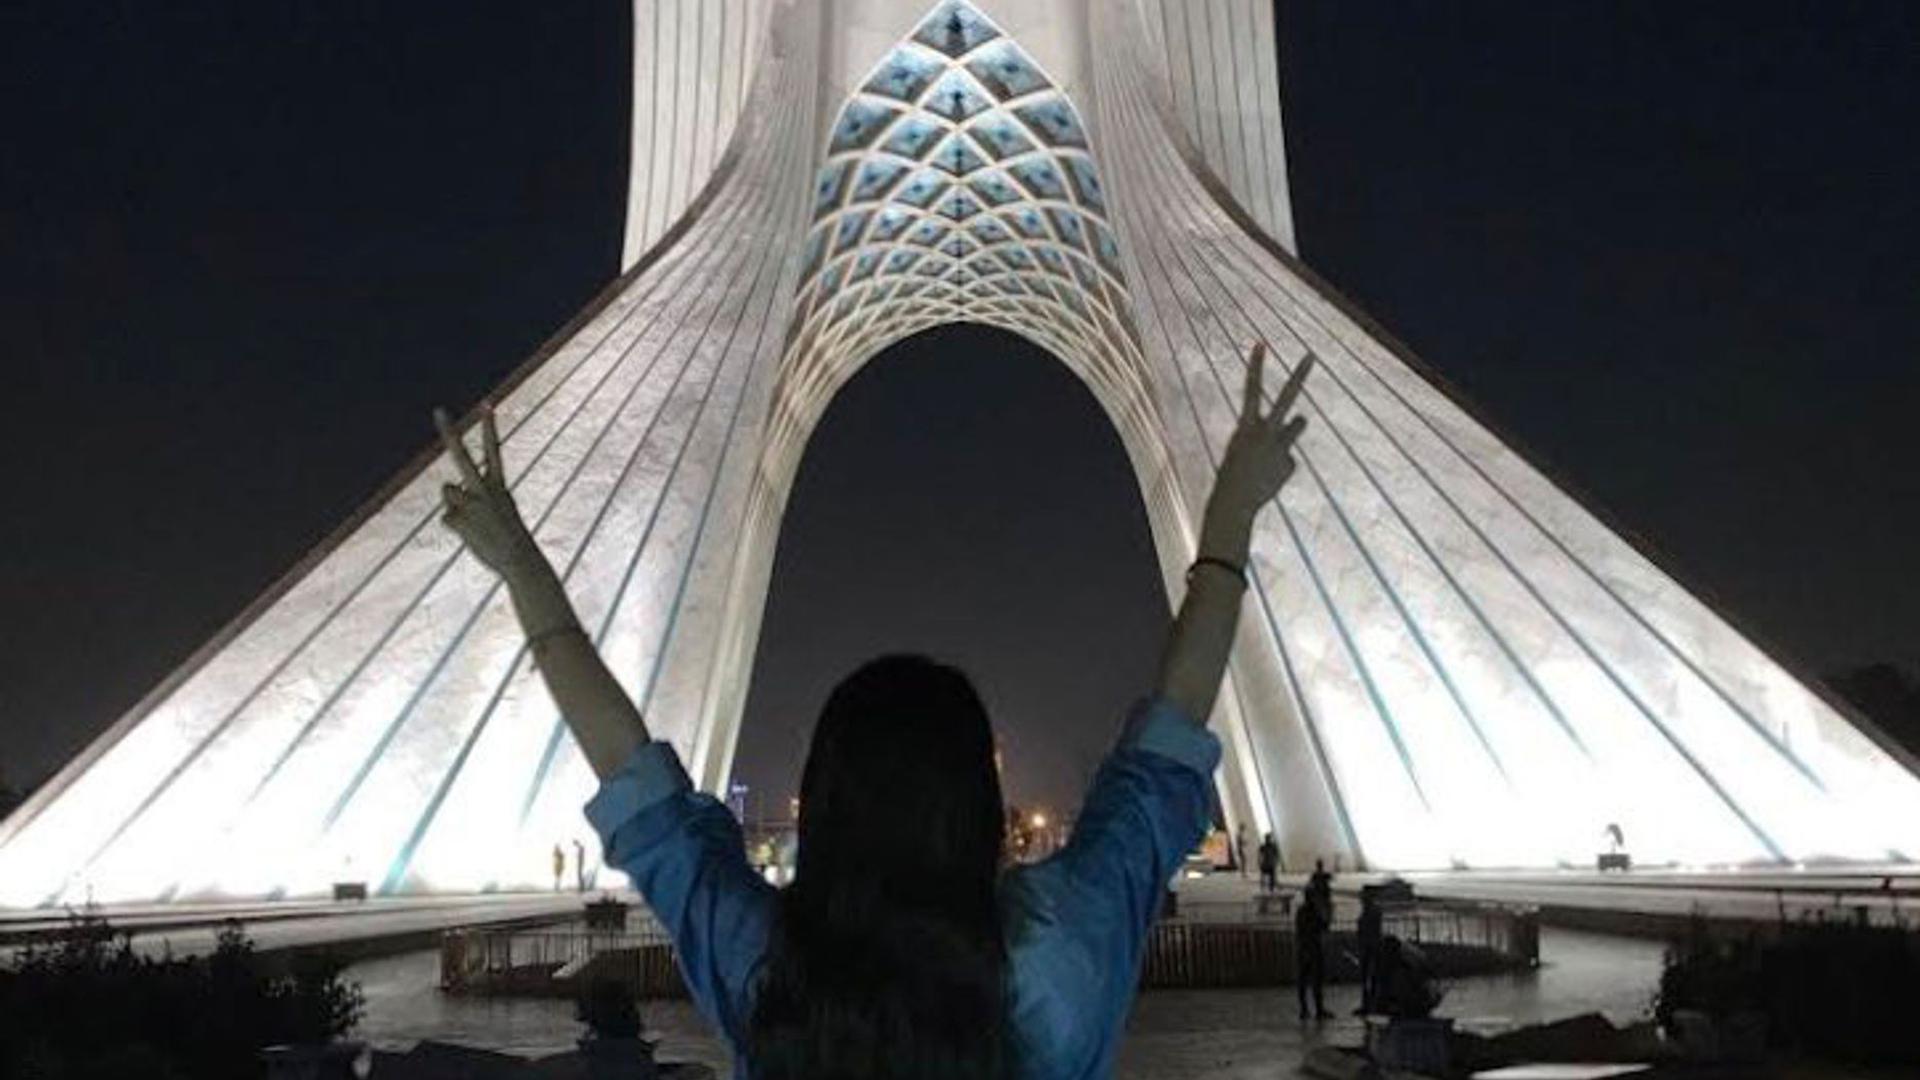 Ein Mädchen steht ohne das vorgeschriebene Kopftuch vor dem Azadi-Turm und zeigt mit beiden Händen das Victory-Zeichen. Bei landesweiten Protesten sind im Iran erneut viele Menschen getötet worden.